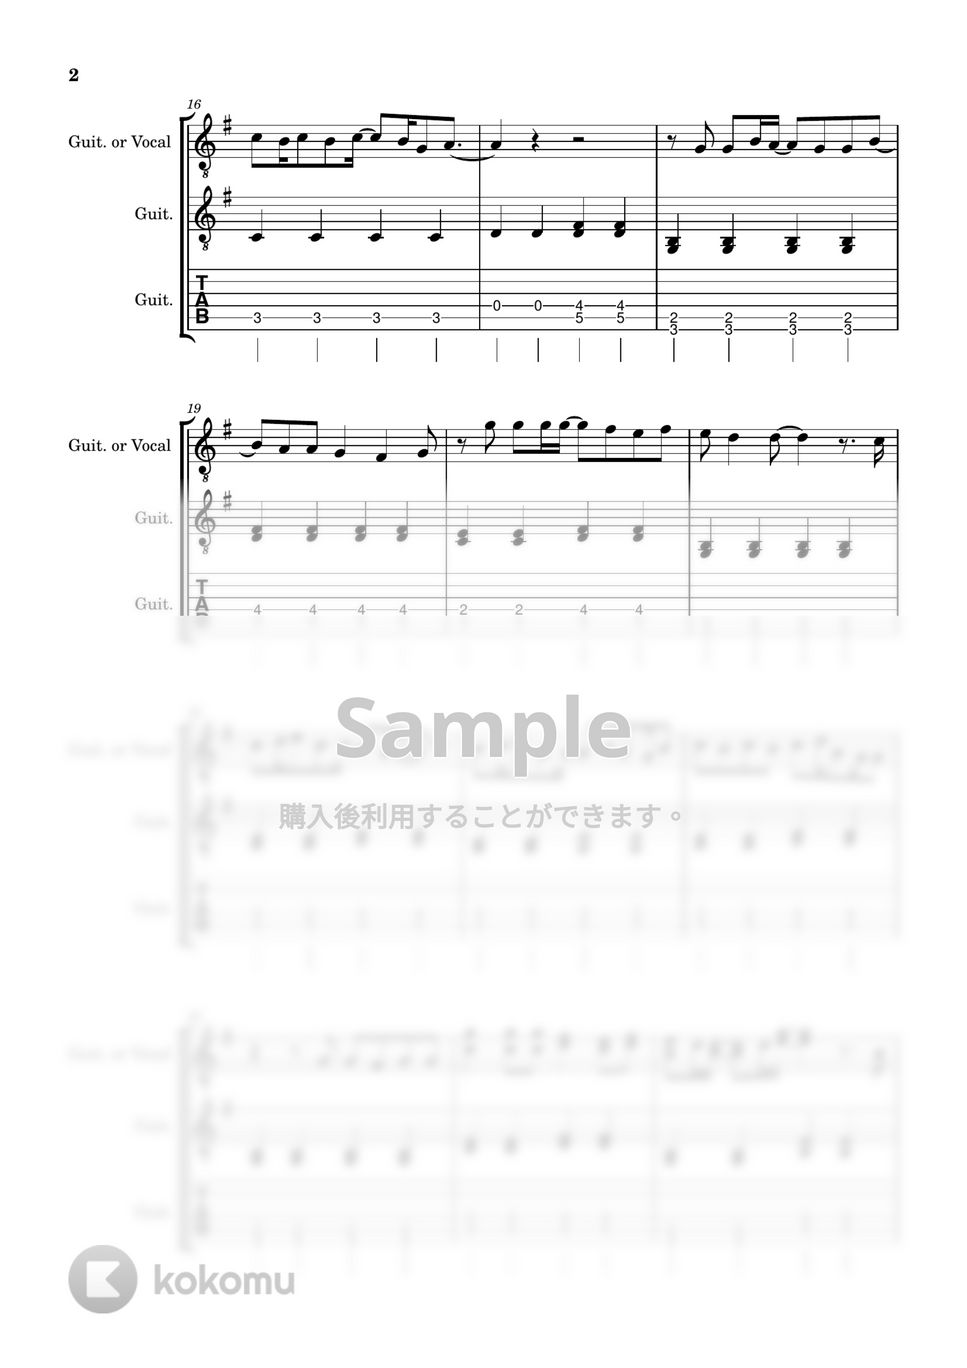 あいみょん - 君はロックを聴かない (ギター / J-POP) by 川西三裕